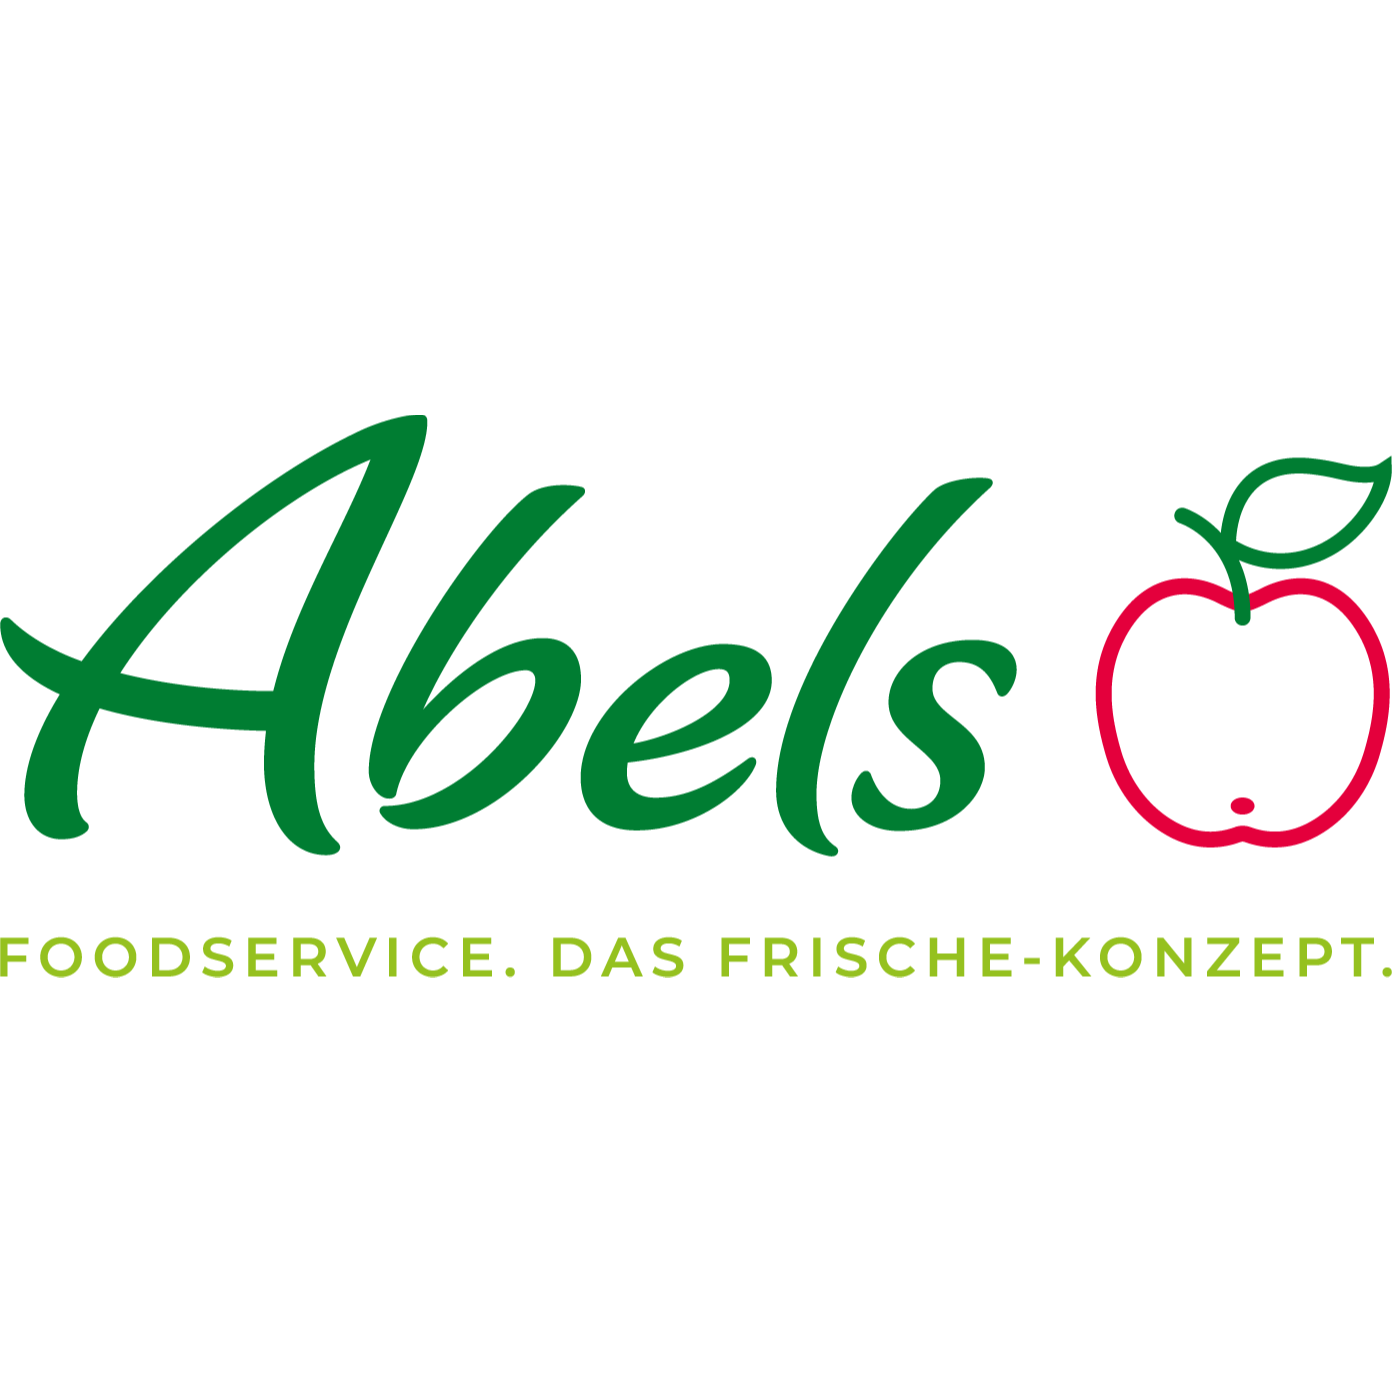 Logo Foodservice Abels Früchte Welt liefert ihnen täglich frisches Obst und Gemüse in Bonn.

Als Spezialist im Großhandel für Obst und Gemüse beliefern wir seit über 60 Jahren - auch überregional den Lebensmittelgroßhandel und Einzelhandel, die Hotellerie, Gastronomie und Gemeinschaftsverpflegung.Wir bieten Ihnen täglich eine große Auswahl an frischem Obst und Gemüse, Exoten, Kräutern, Kartoffeln, Sprossen sowie das vollständige Angebot an küchenfertigem Obst, Gemüse und Salaten aus eigener Produktion. Auch unser Convenience-Angebot entlastet Sie bei Ihrer täglichen Arbeit. Wir bieten Ihnen hochwertige Produkte und überzeugen durch Frische und Qualität.